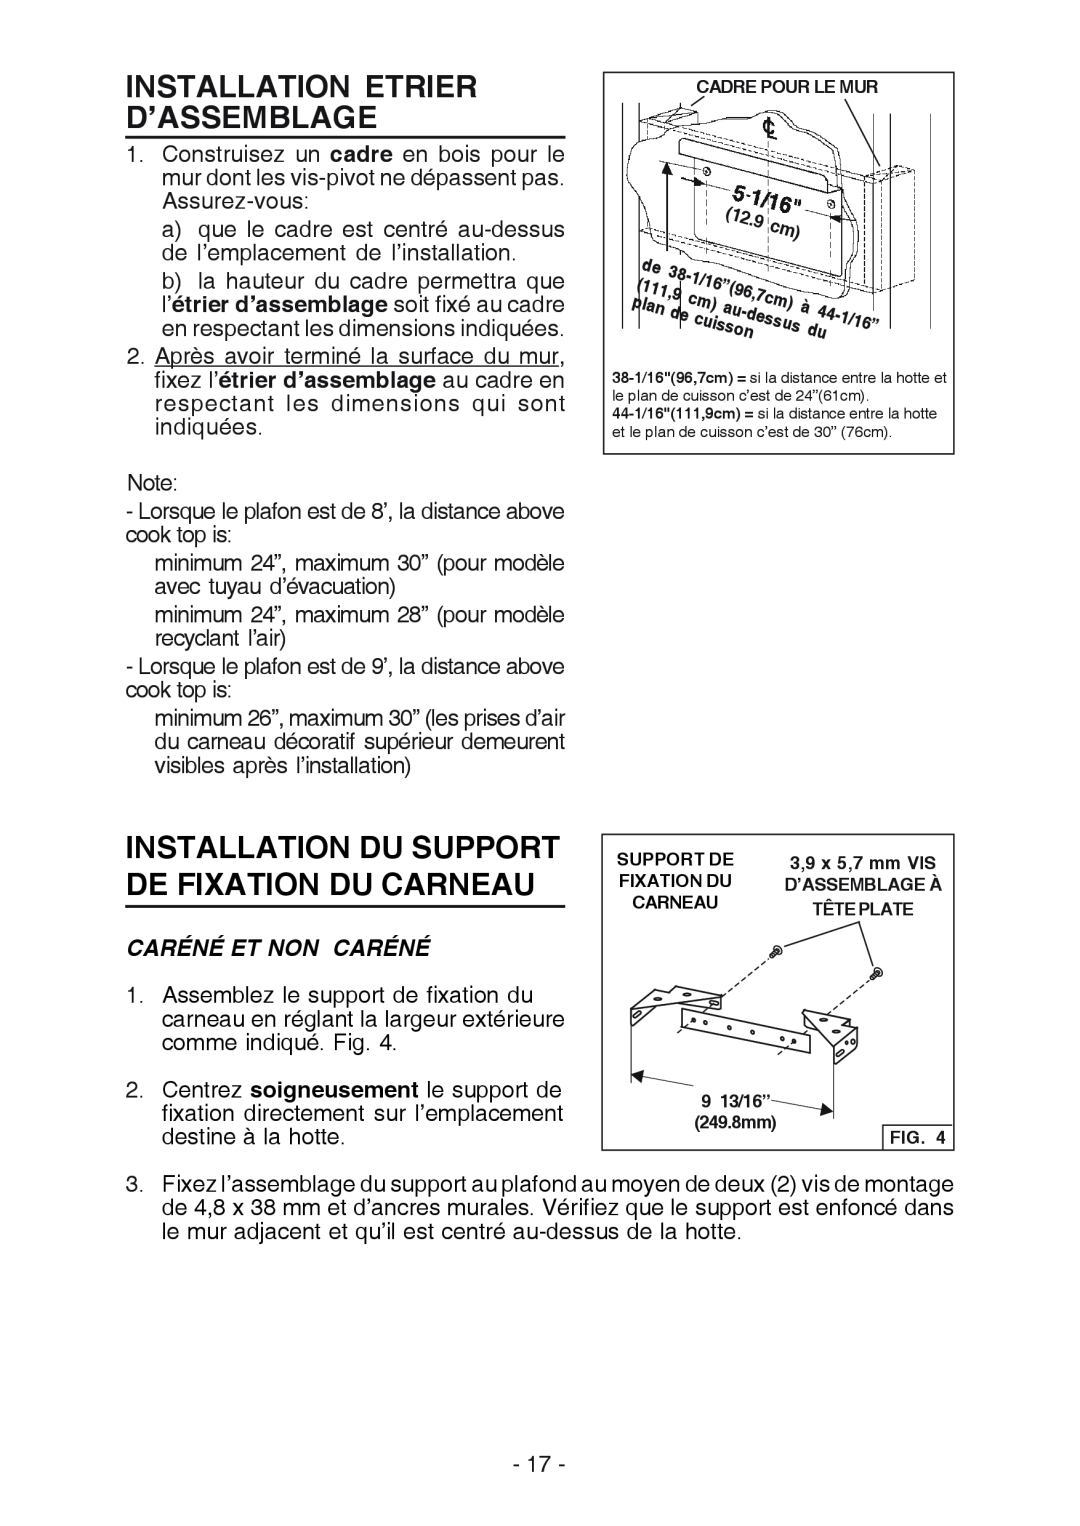 Broan RM519004 Installation Etrier D’Assemblage, Installation Du Support De Fixation Du Carneau, Caréné Et Non Caréné 